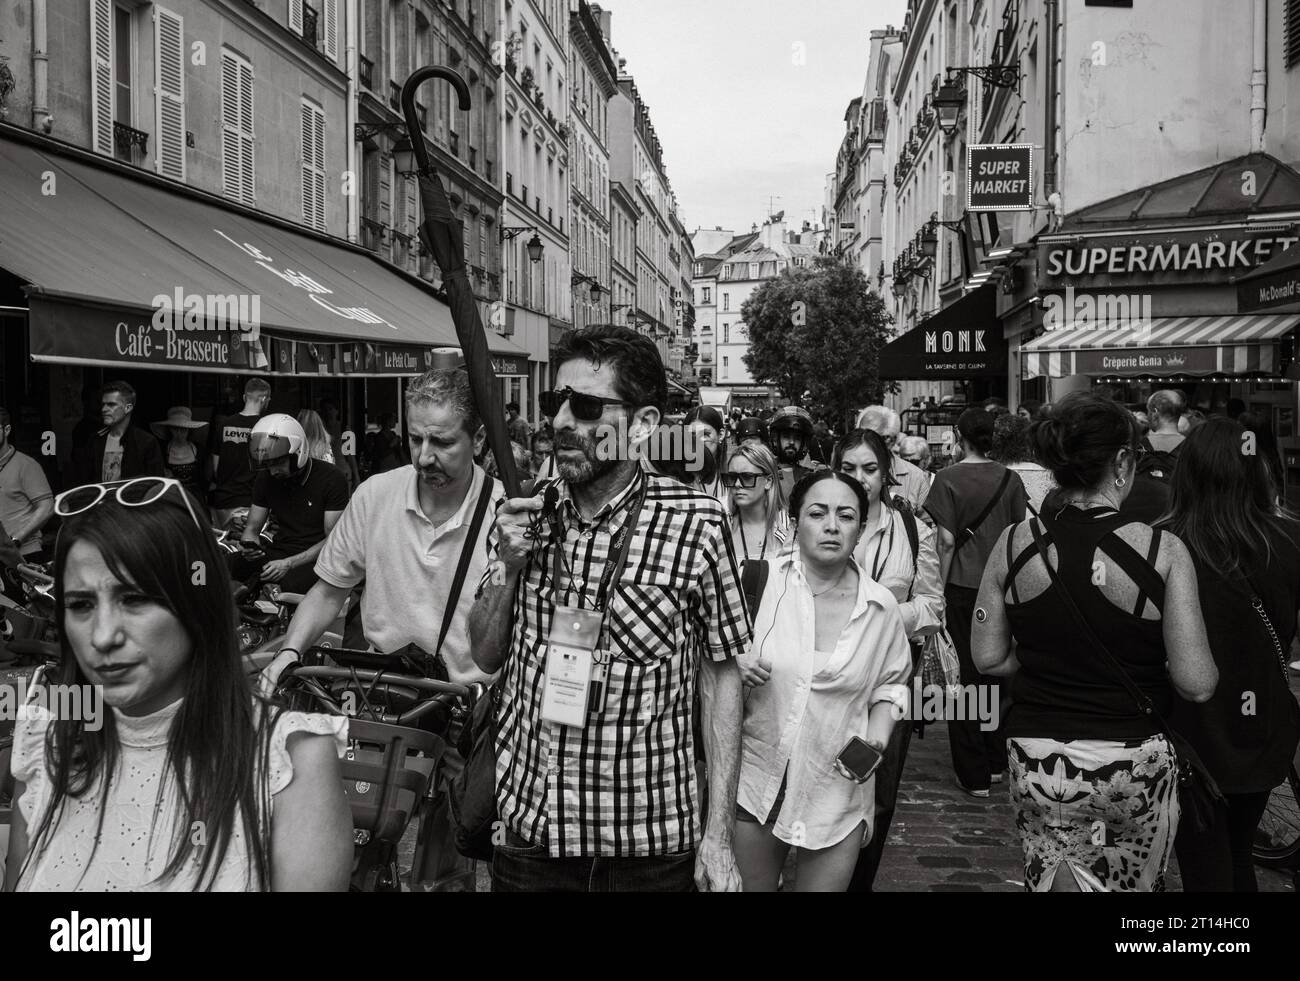 Un guide touristique tient un parapluie alors qu'il mène un groupe de touristes à travers le quartier Latin bondé de Paris, en France. Banque D'Images